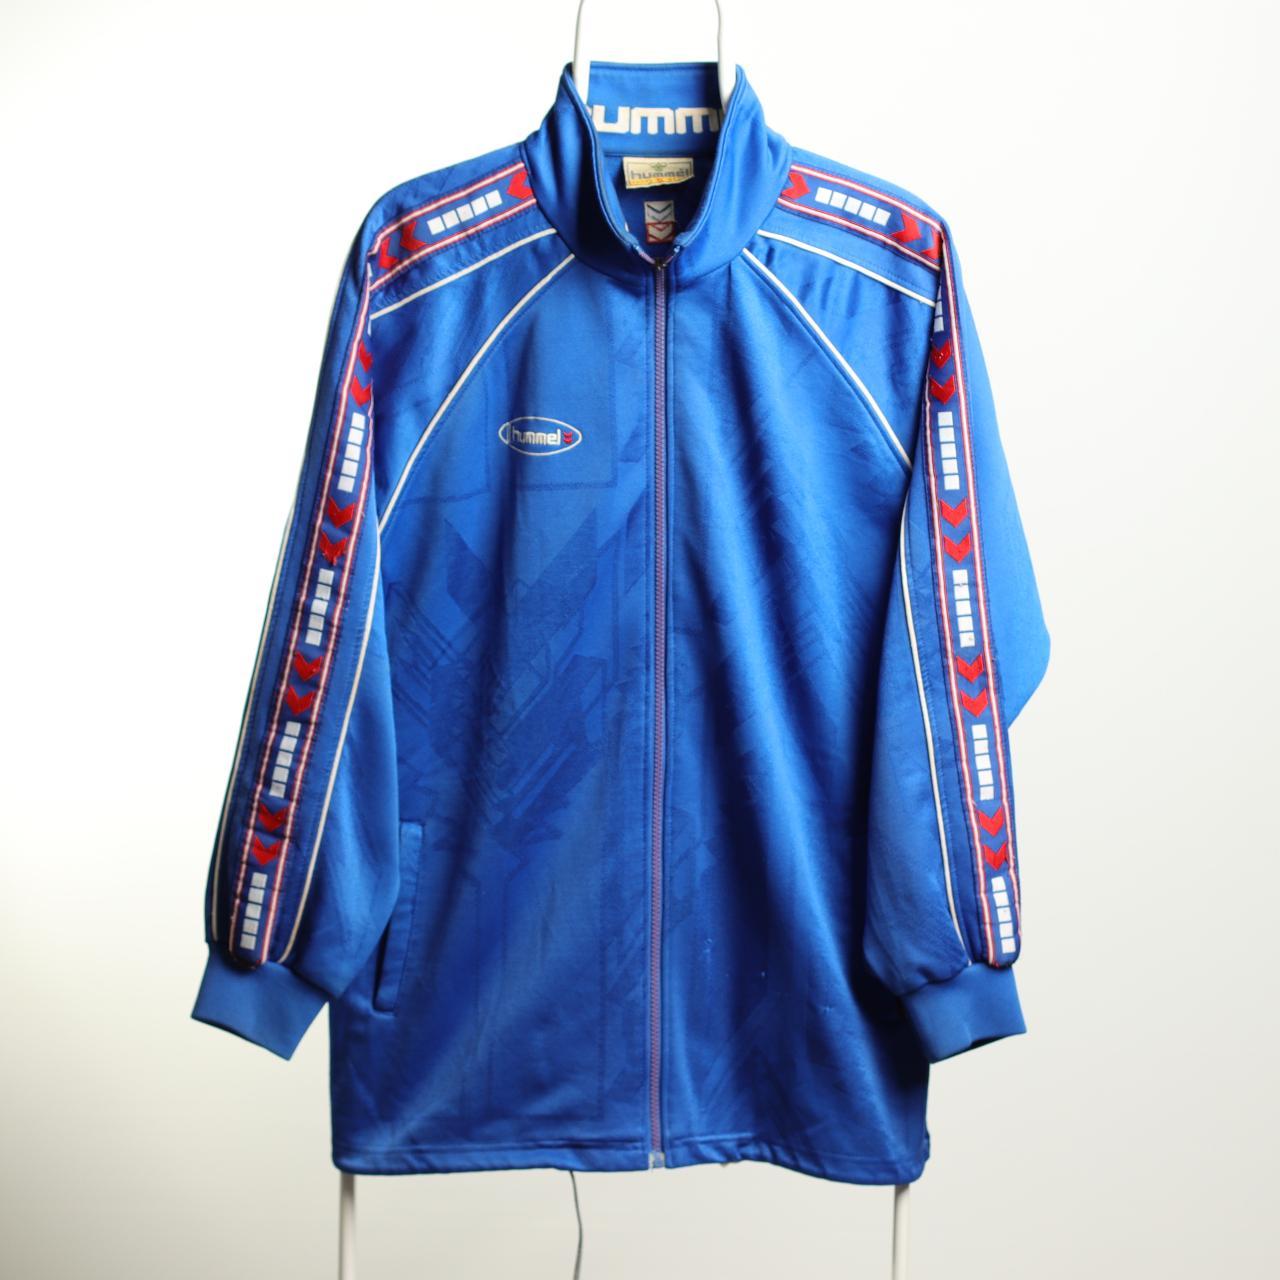 Vintage Hummel Track Jacket in blue with embroidered... - Depop